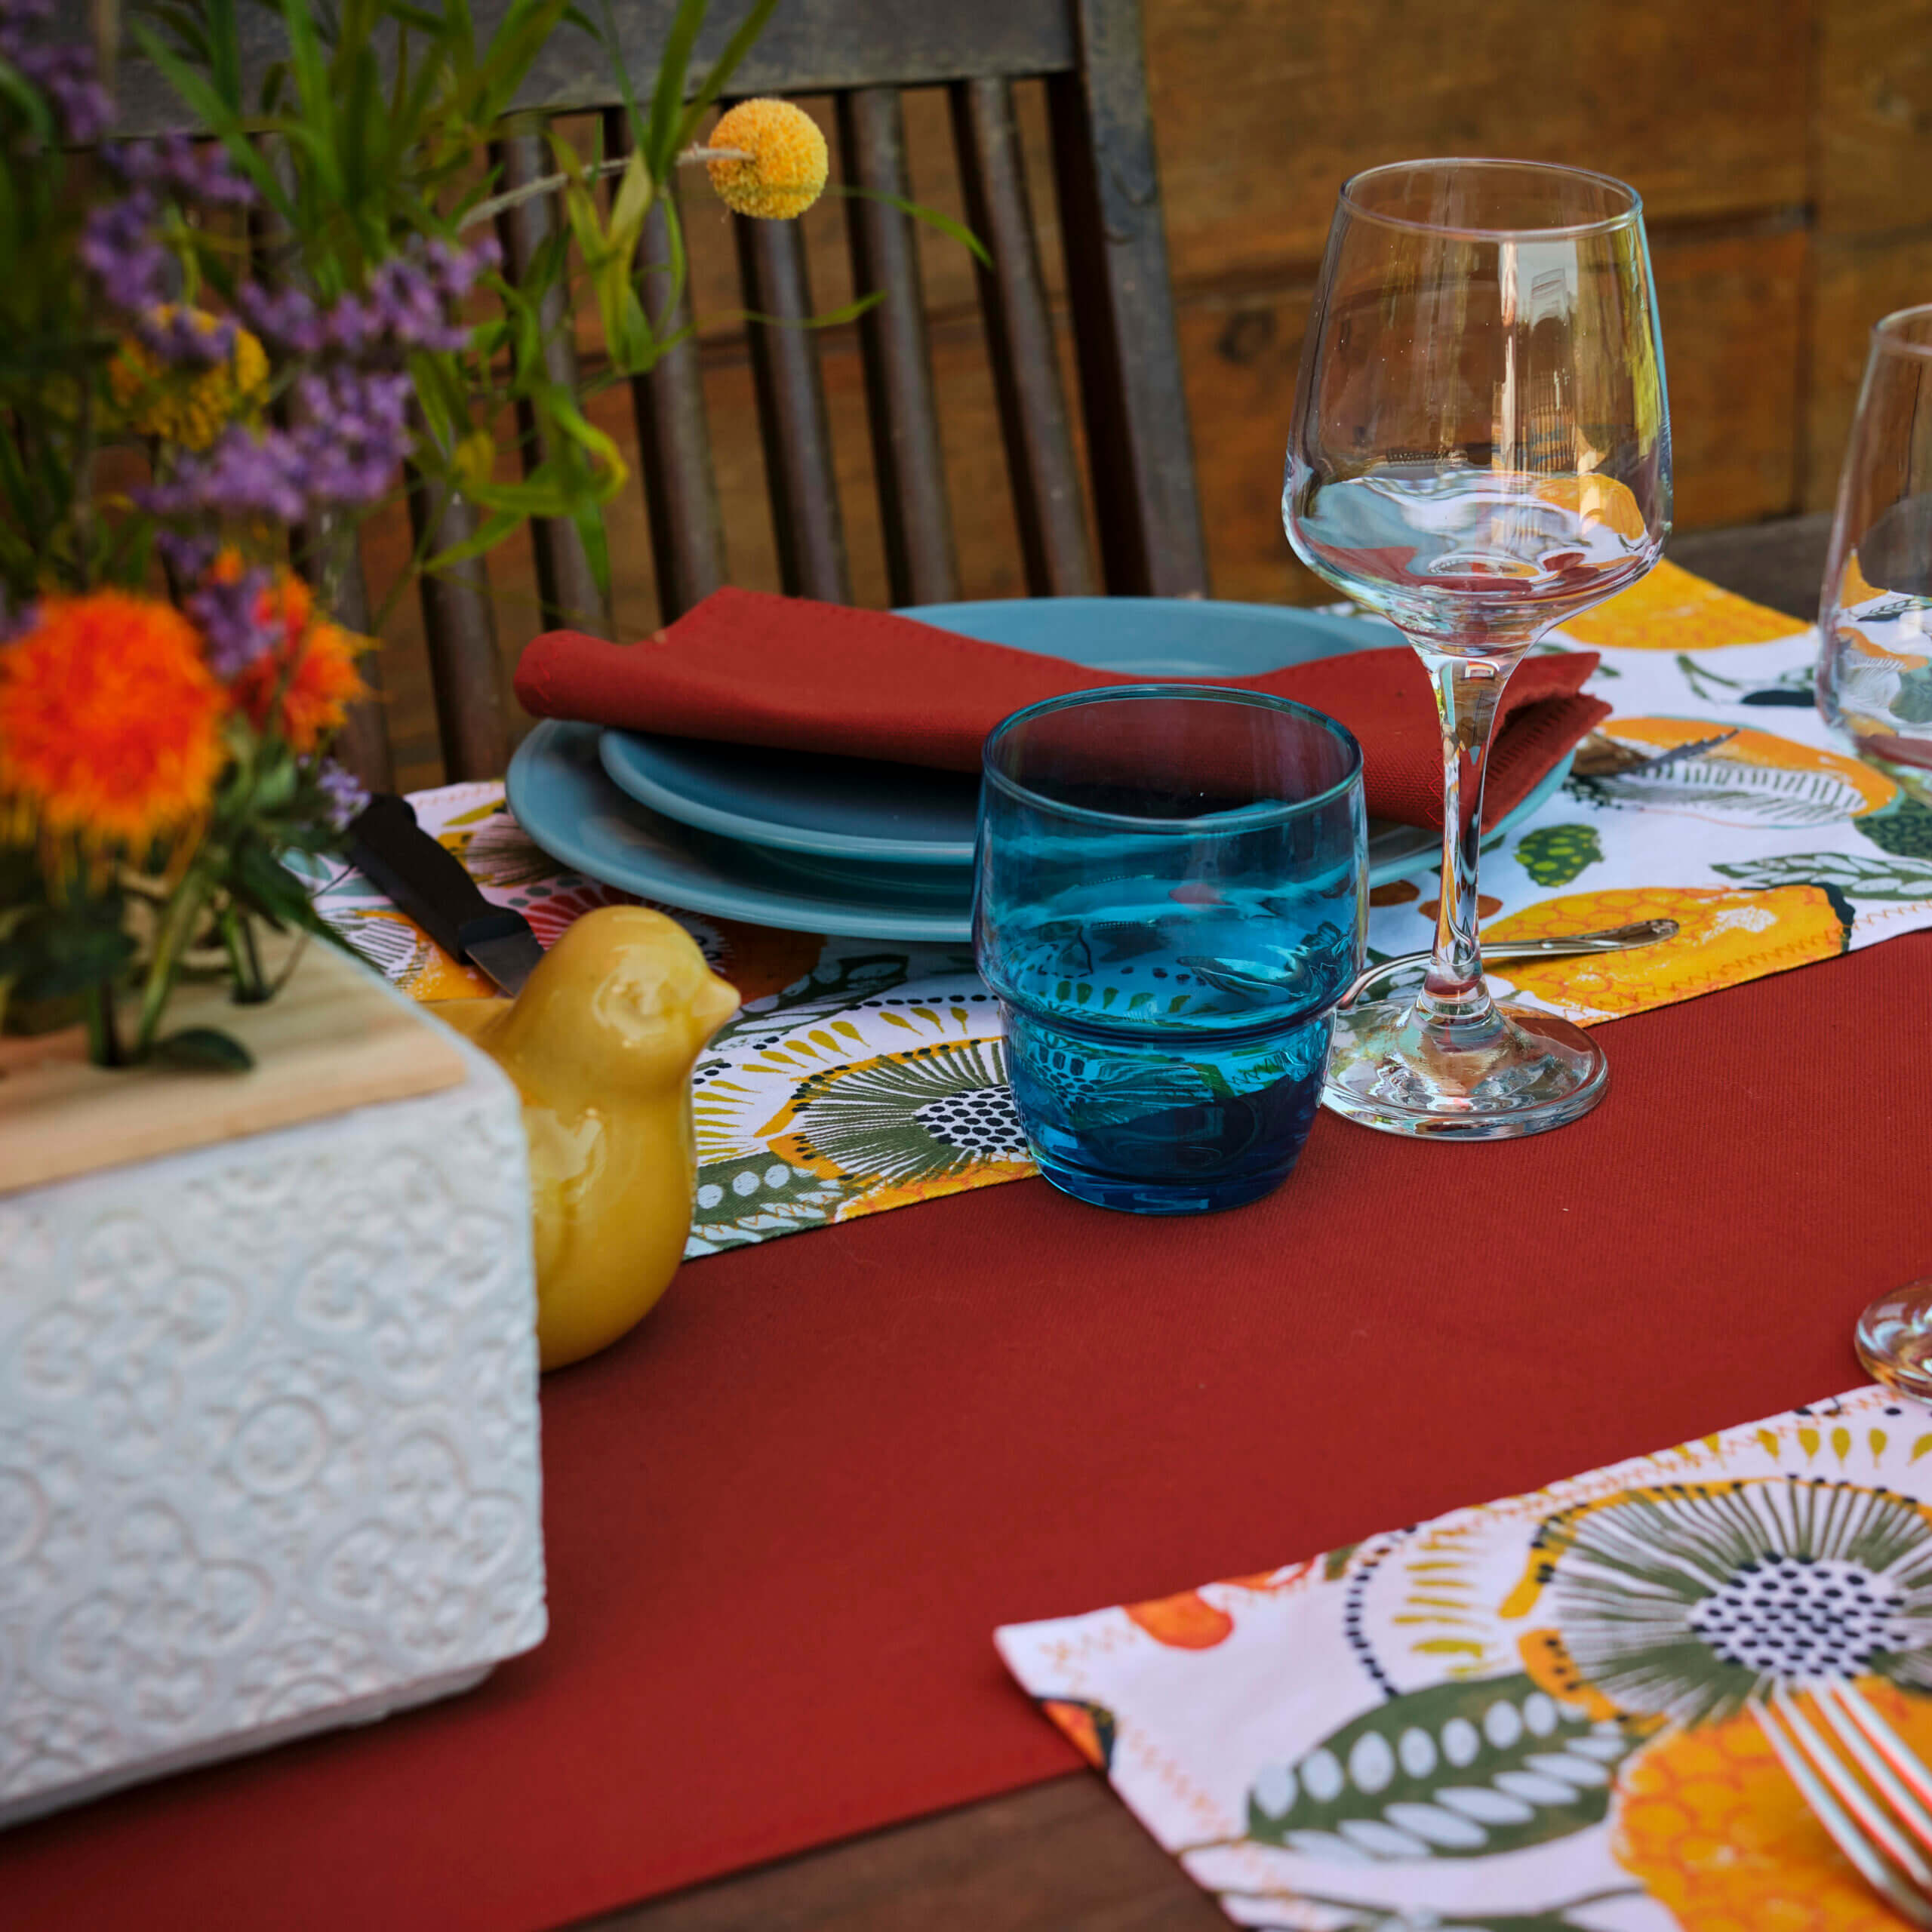 Table extérieure décorée par Georgette MagritteS. Chemin de table rouge, assiettes et verres bleus, serviettes rouges, fleurs.